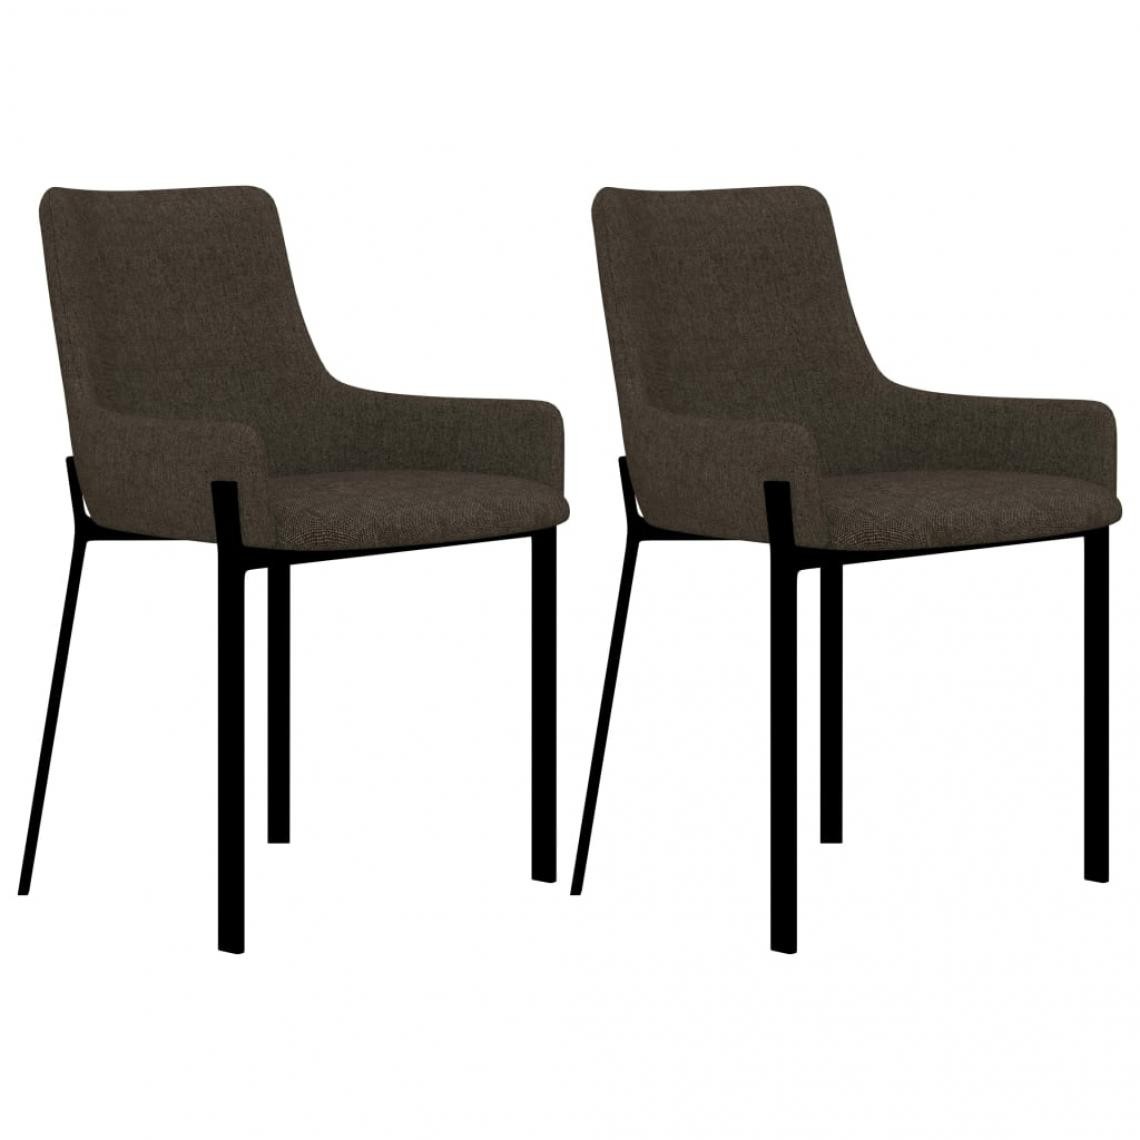 Decoshop26 - Lot de 2 chaises de salle à manger cuisine design moderne tissu marron CDS020766 - Chaises